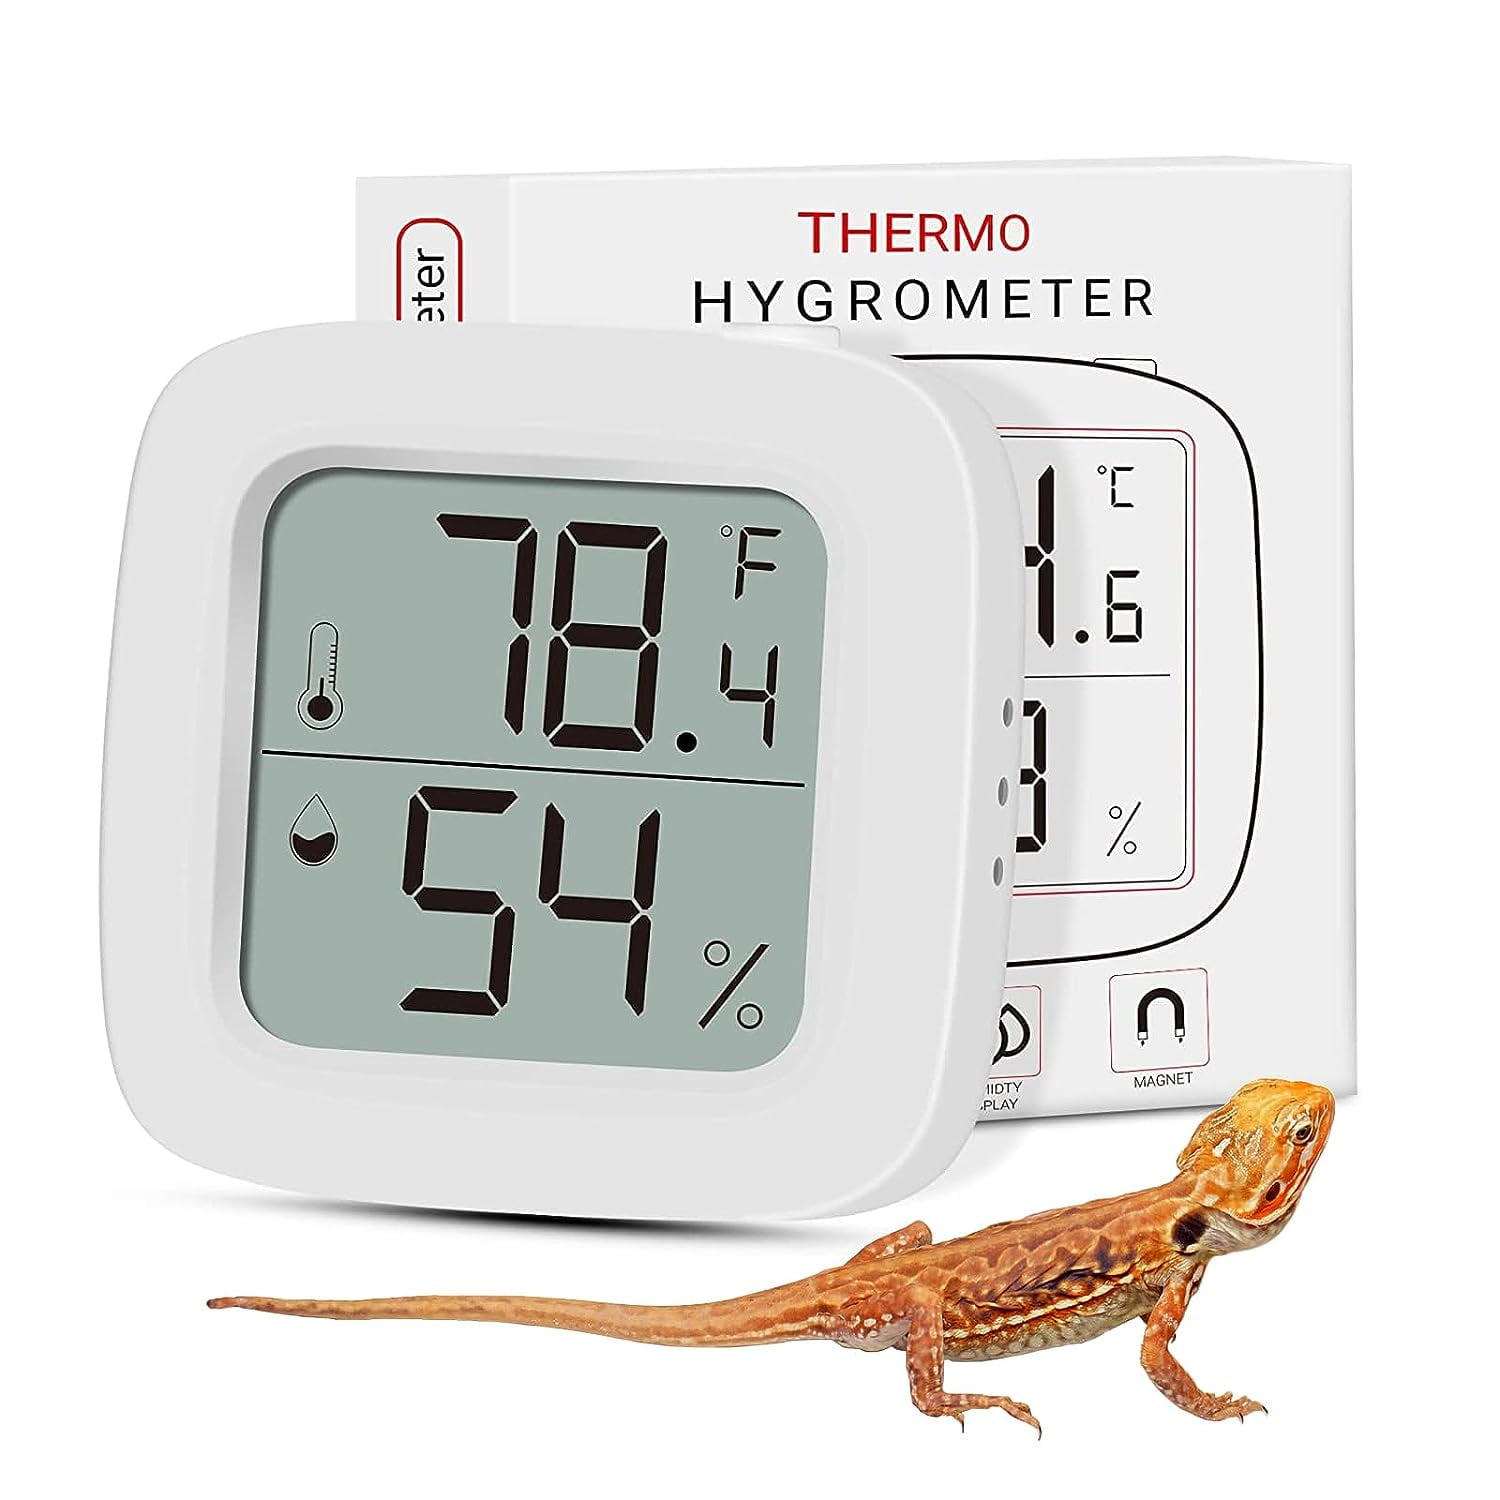 Repti Zoo Reptile Terrarium Thermometer Hygrometer Dual Gauges Pet Rearing Box